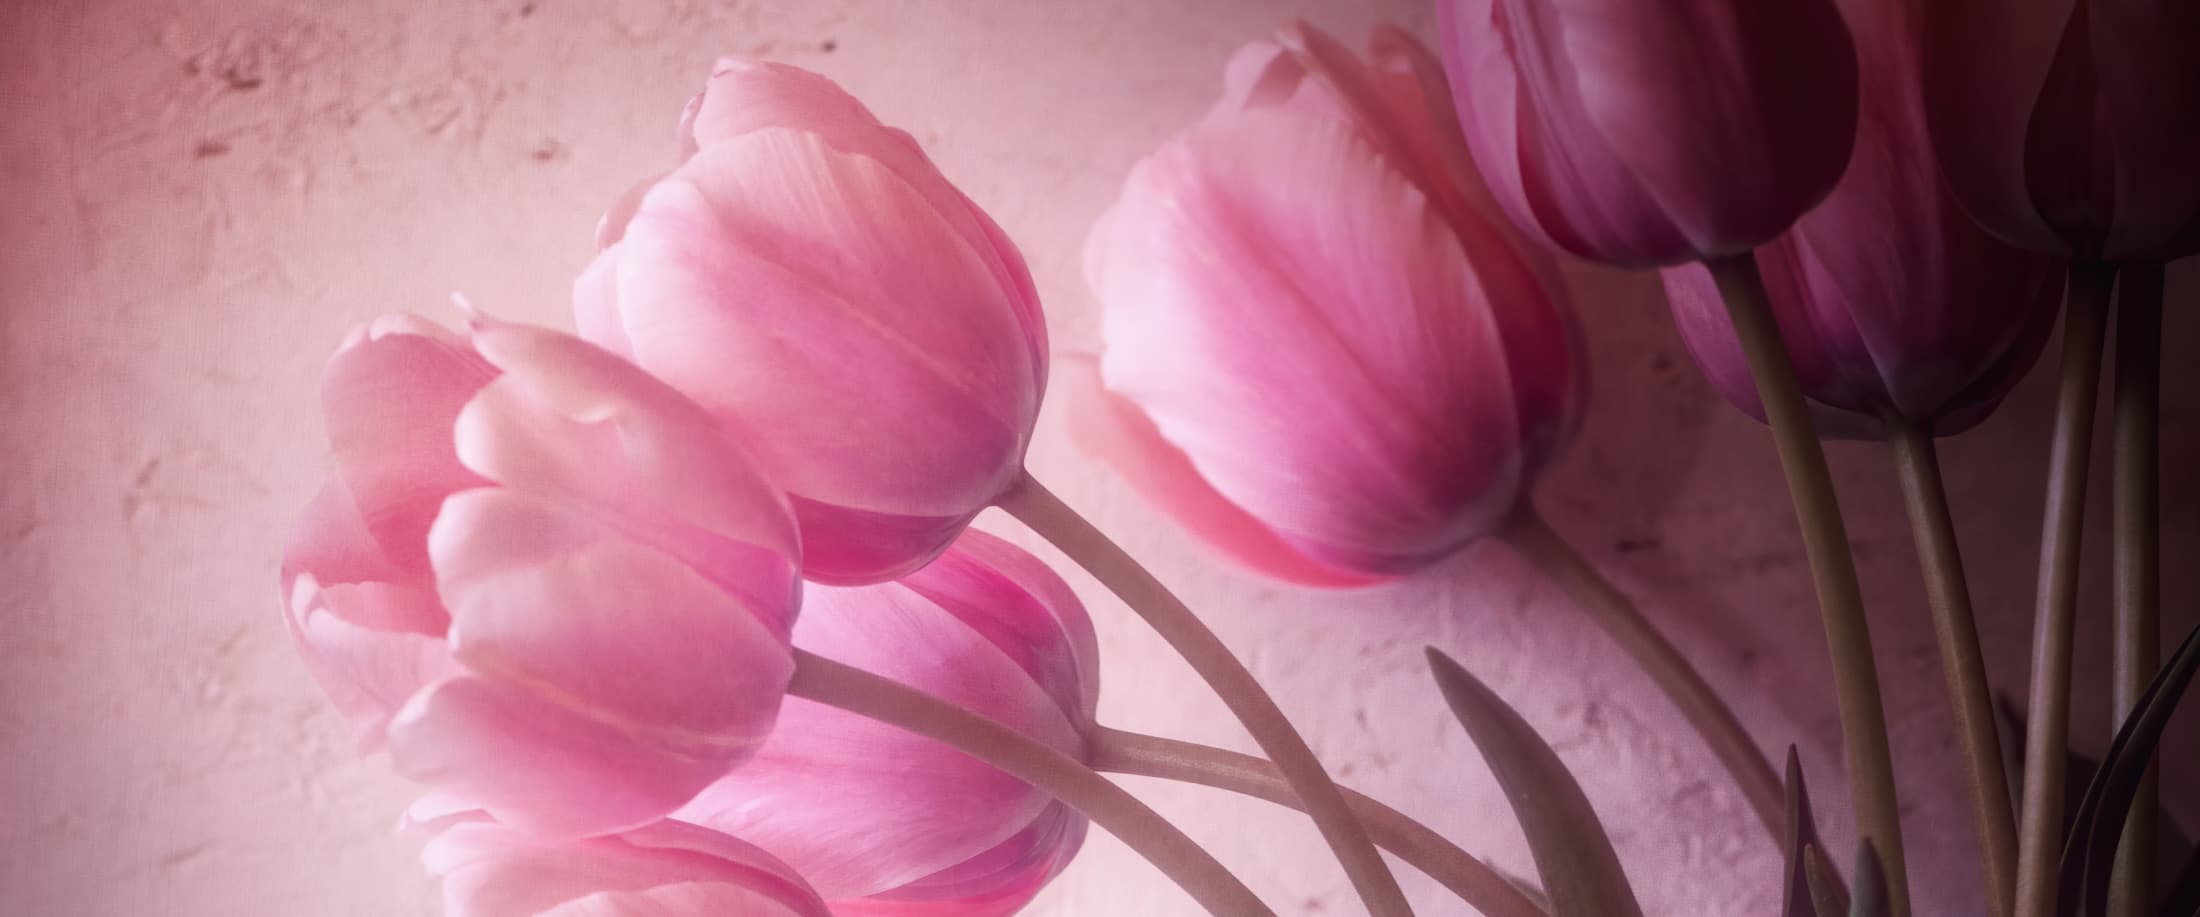 Tulipe, symbolique de la fleur. Origine et galerie photos.